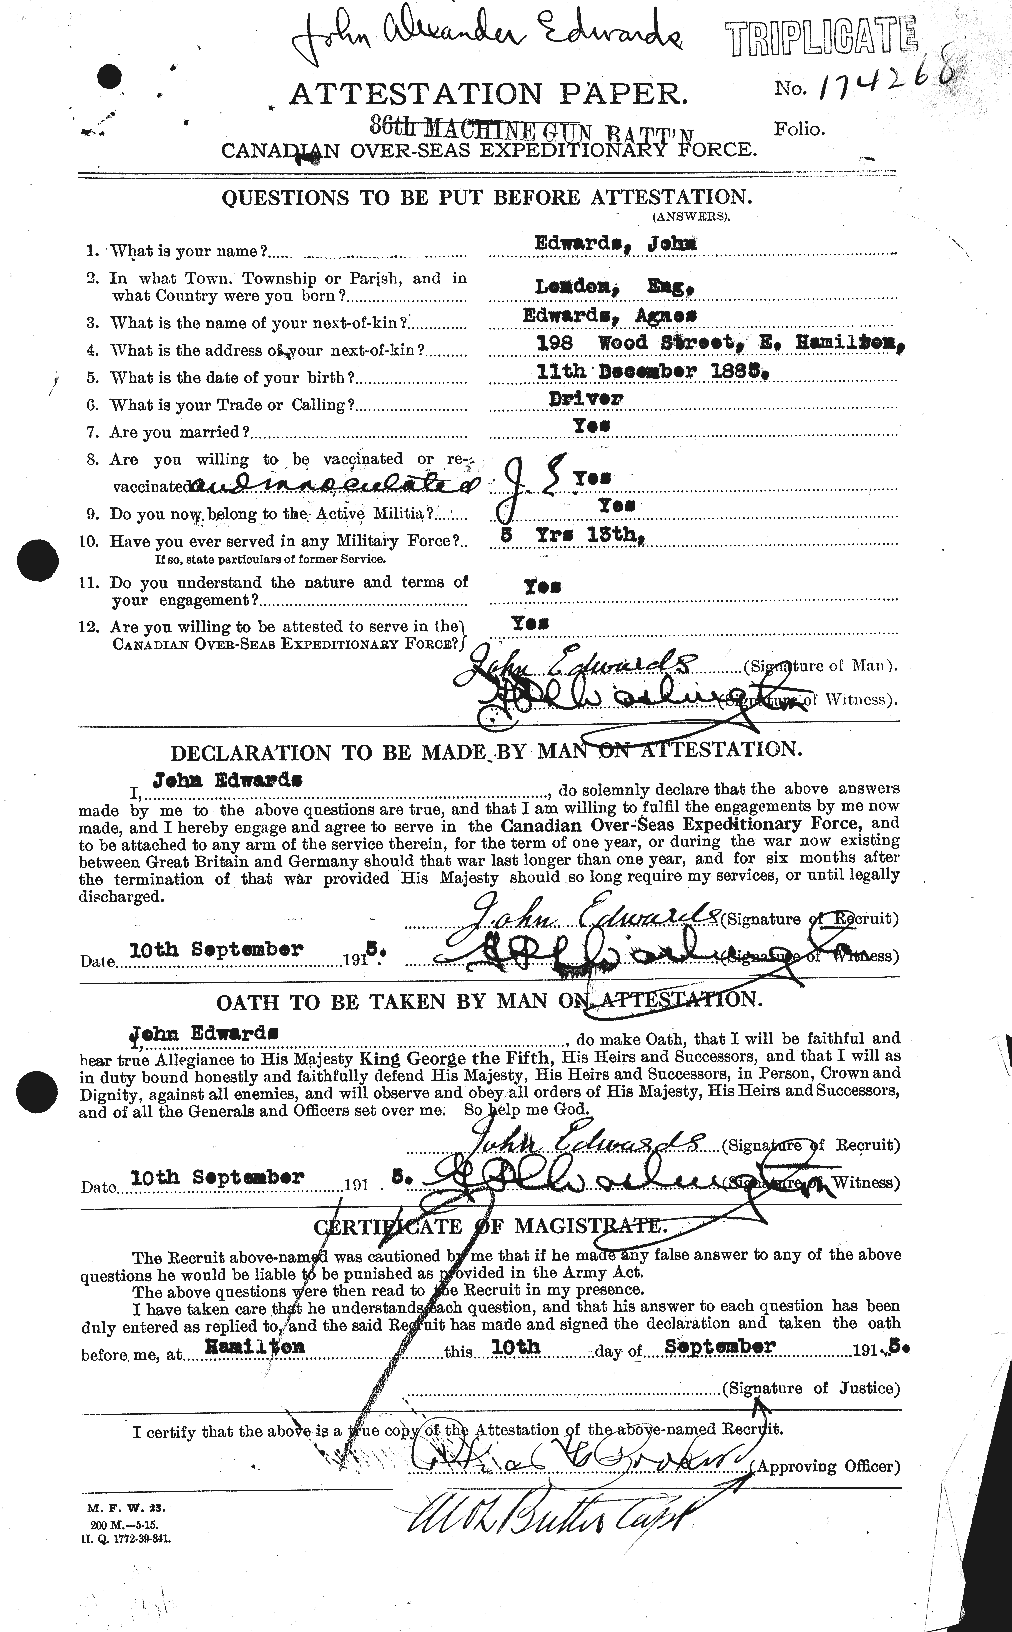 Dossiers du Personnel de la Première Guerre mondiale - CEC 309839a